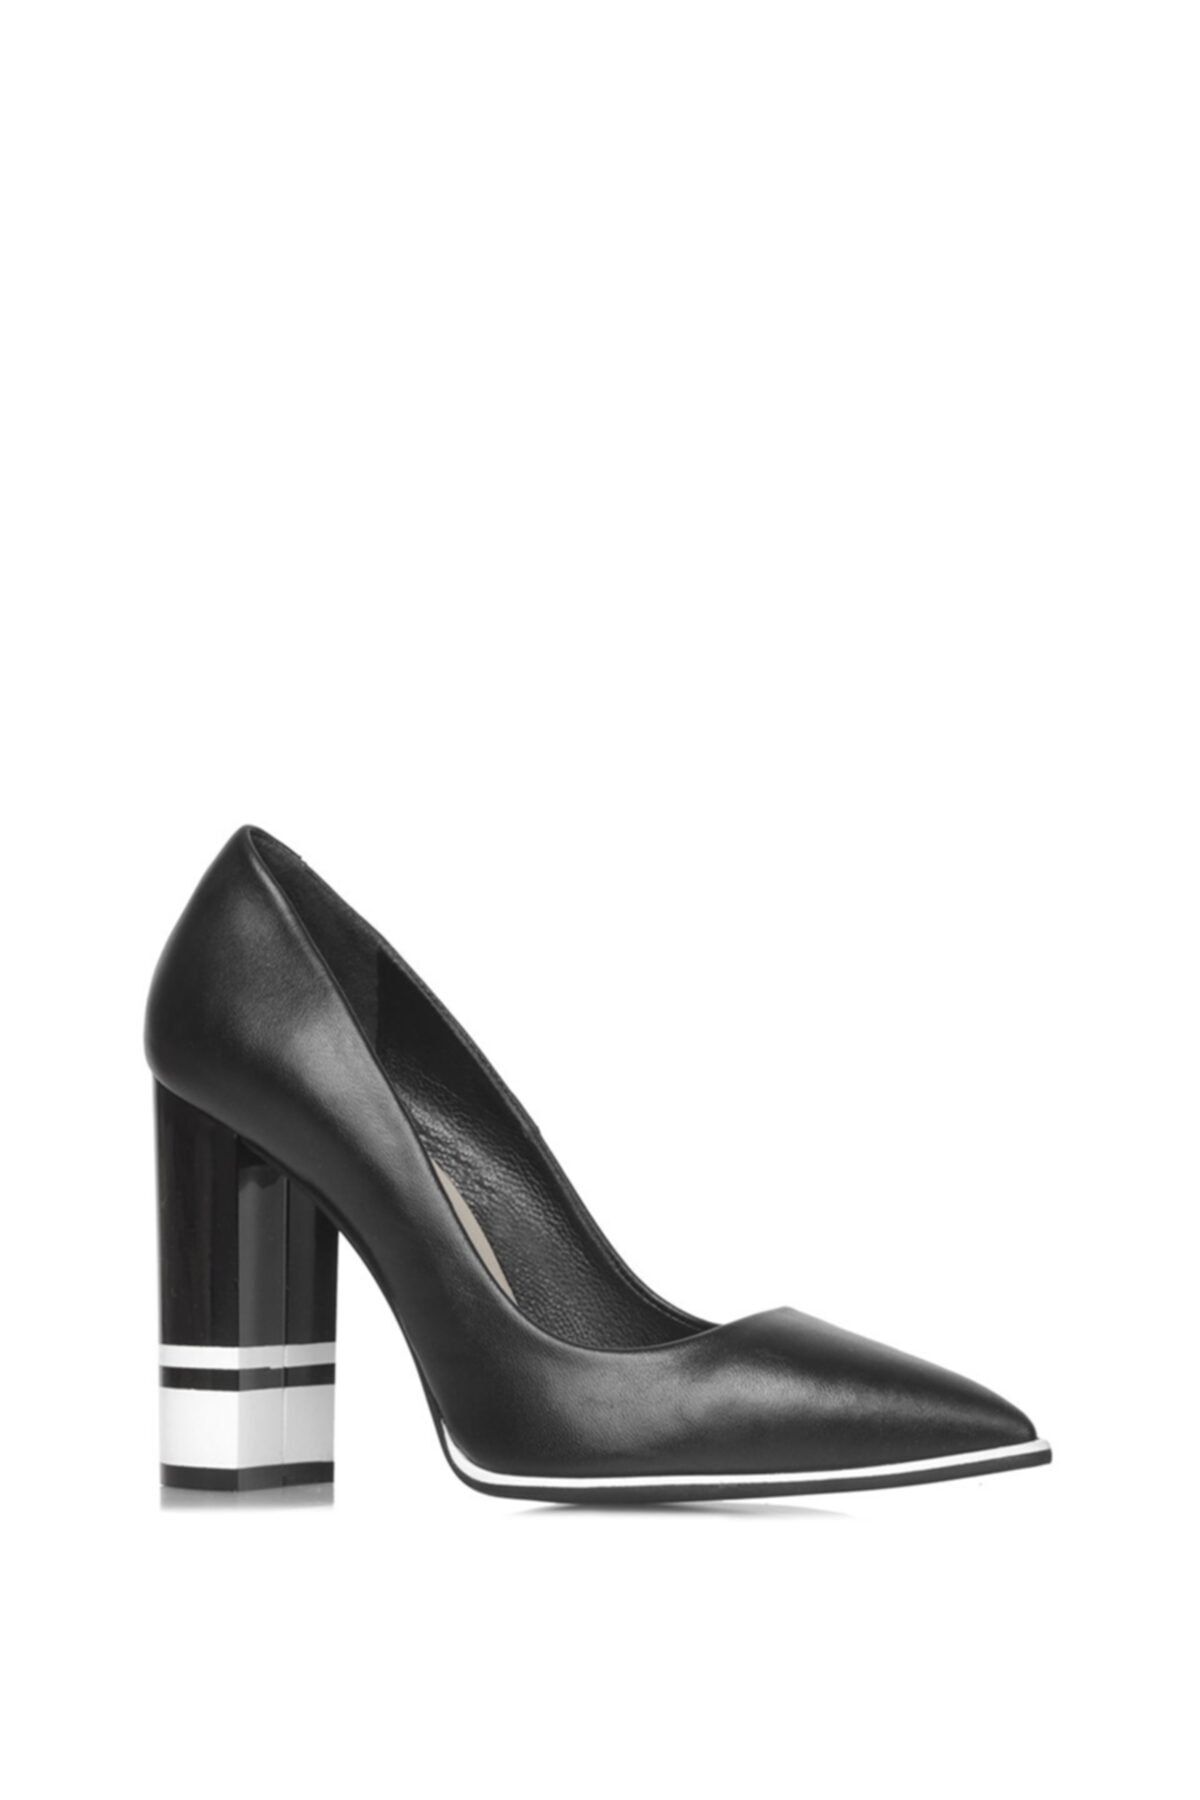 İlvi Kadın Siyah Topuklu Ayakkabı Deri Sandi-1230-20.1001